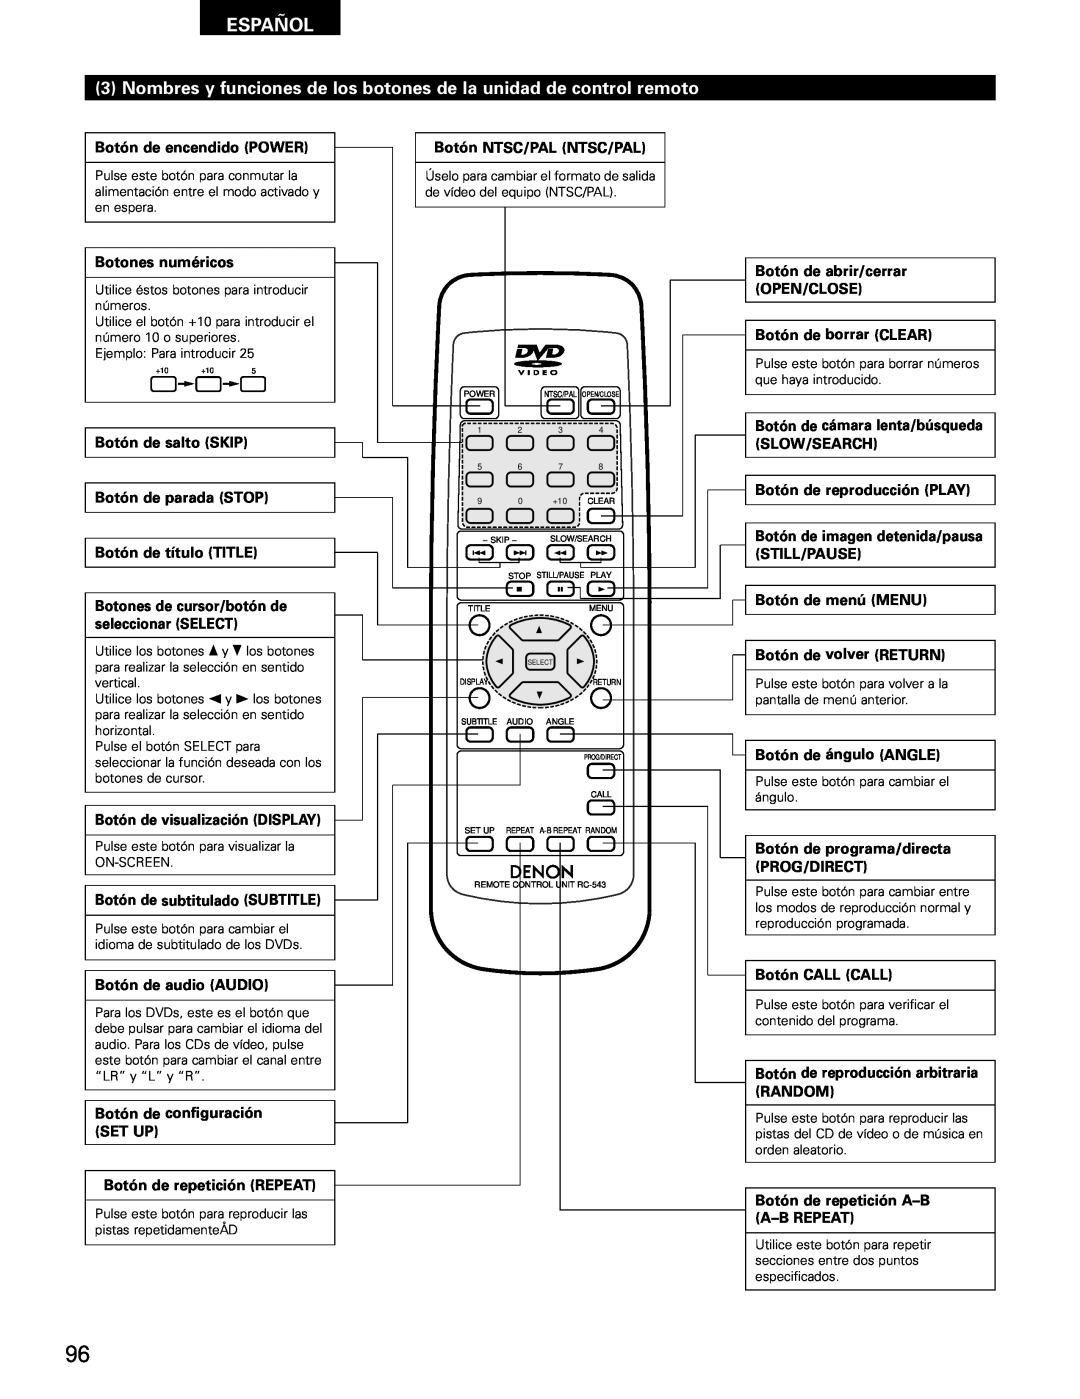 Denon DVD-1000 manual Nombres y funciones de los botones de la unidad de control remoto, Español, Botón de encendido POWER 